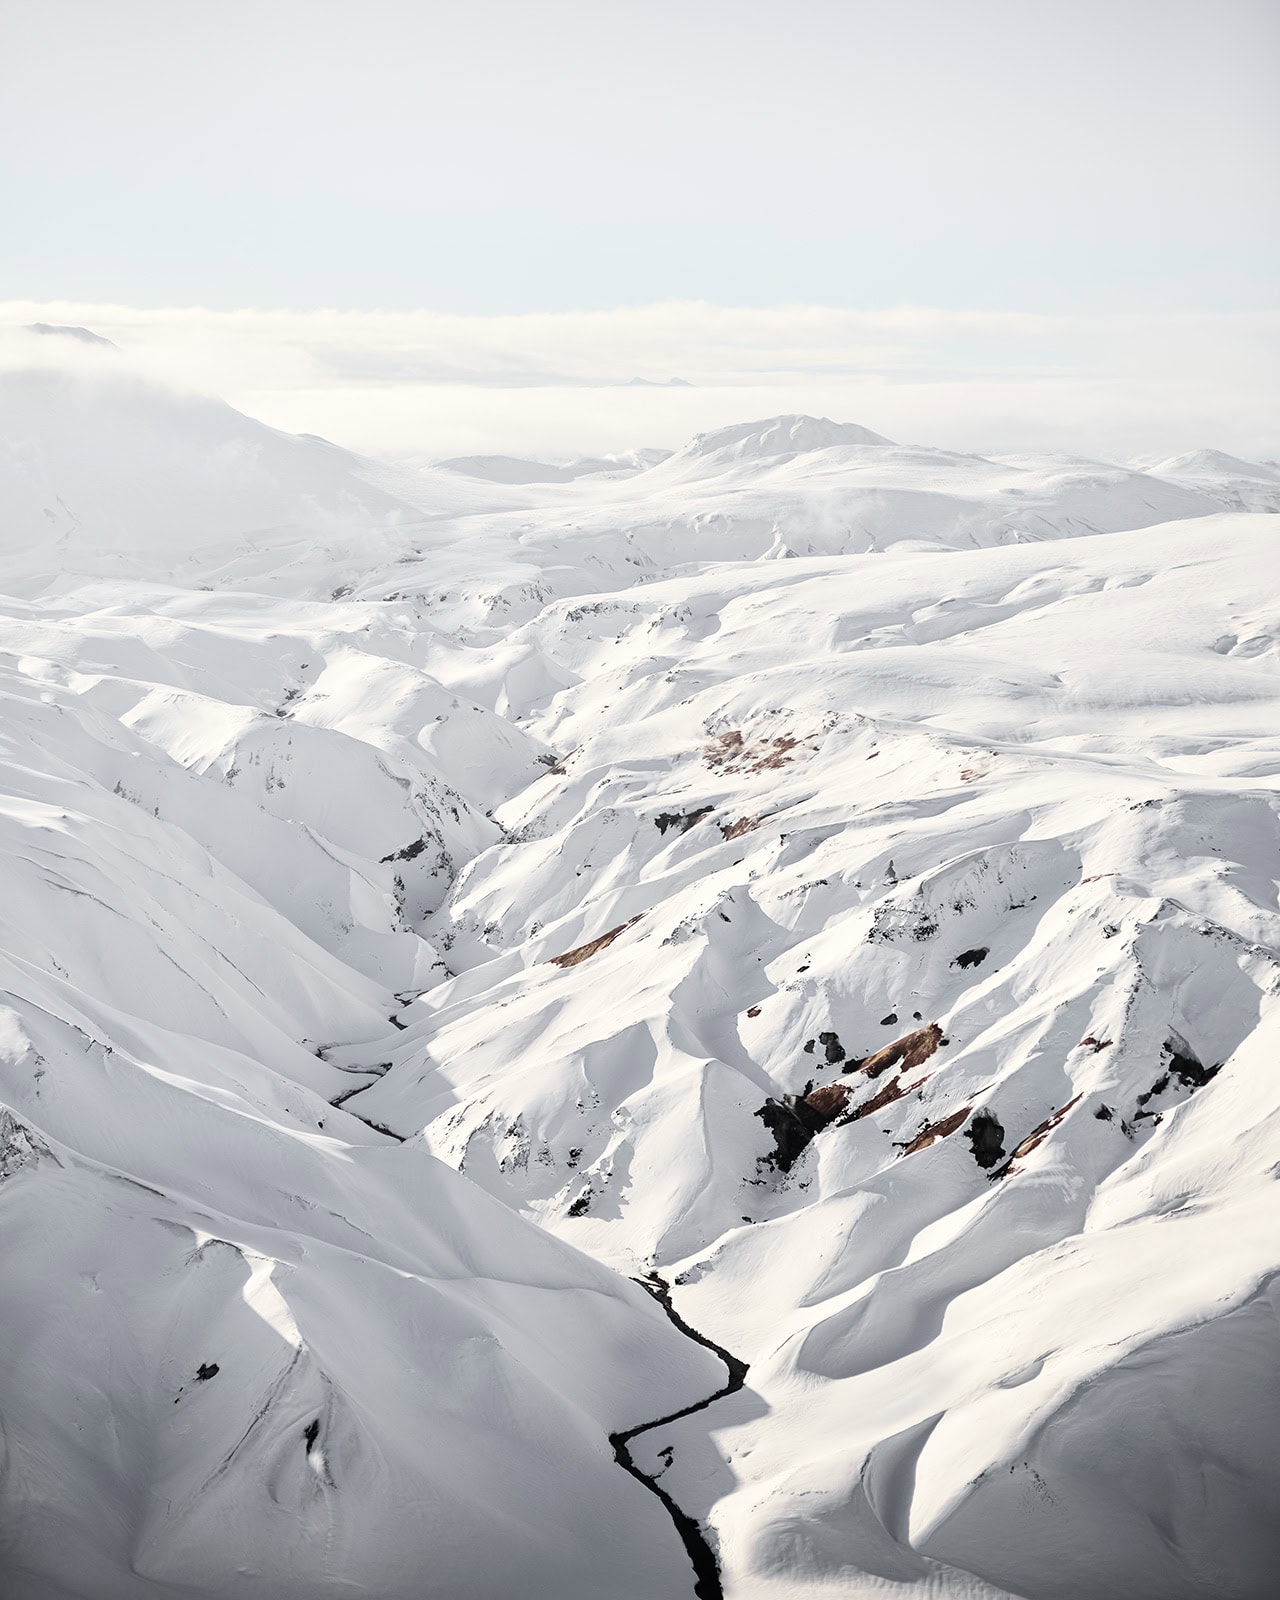 "Highlands of Iceland" Bilddrucke in höchster Qualität mit der ChromaLuxe Technologie